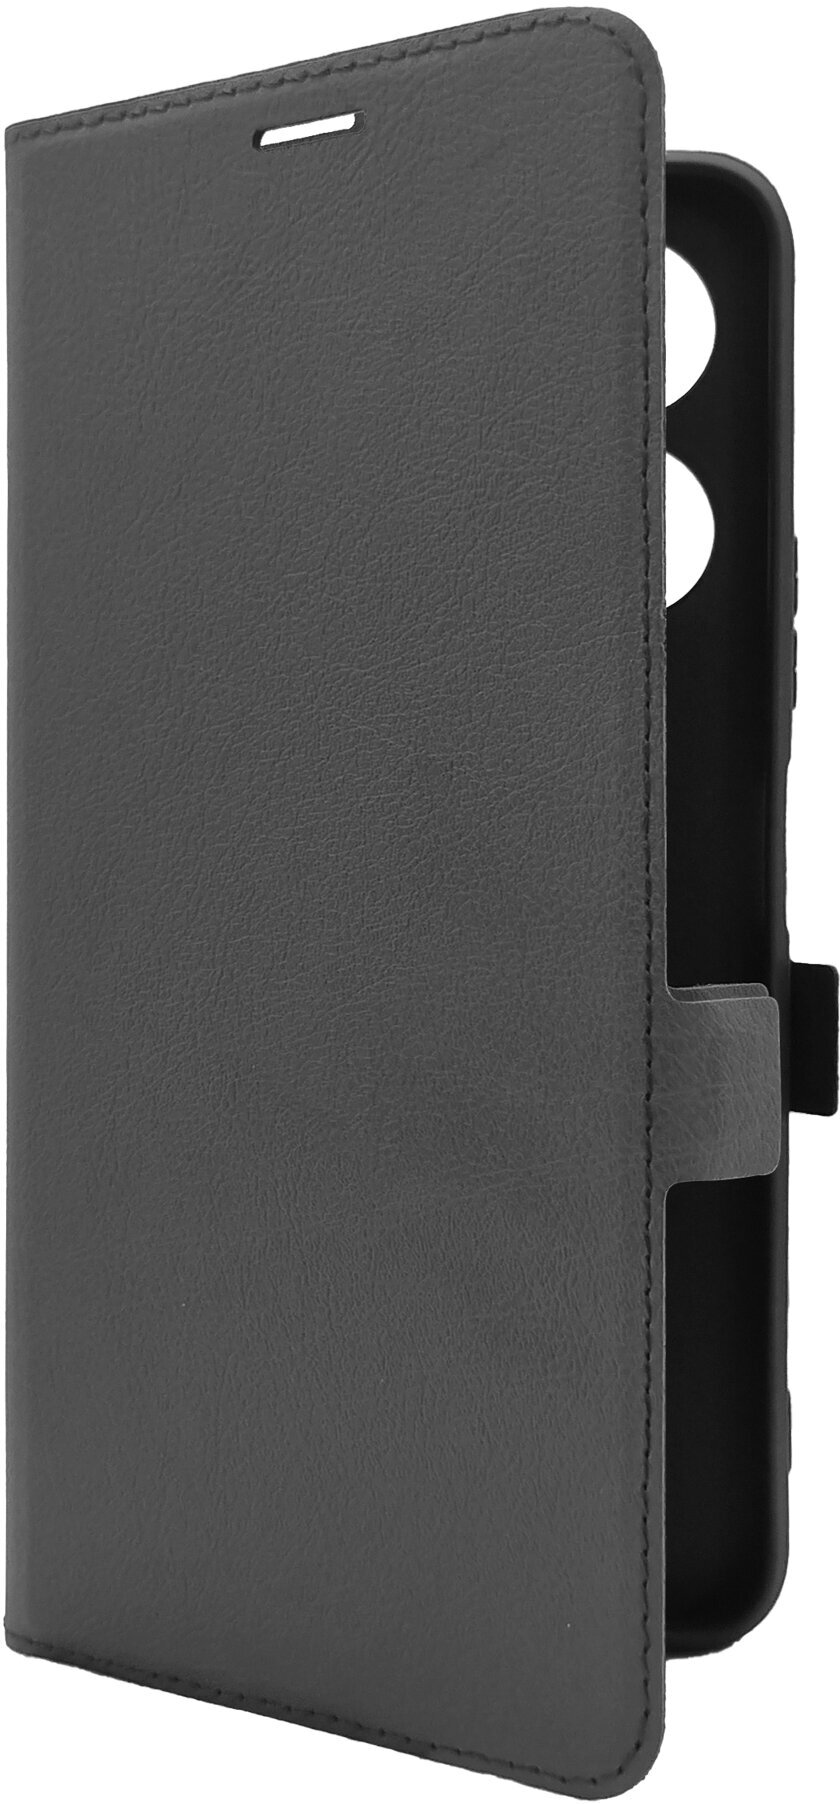 Чехол на Infinix Note 30i (Инфиникс Нот 30ай) черный книжка эко-кожа с функцией подставки отделением для карт и магнитами Book case, Miuko